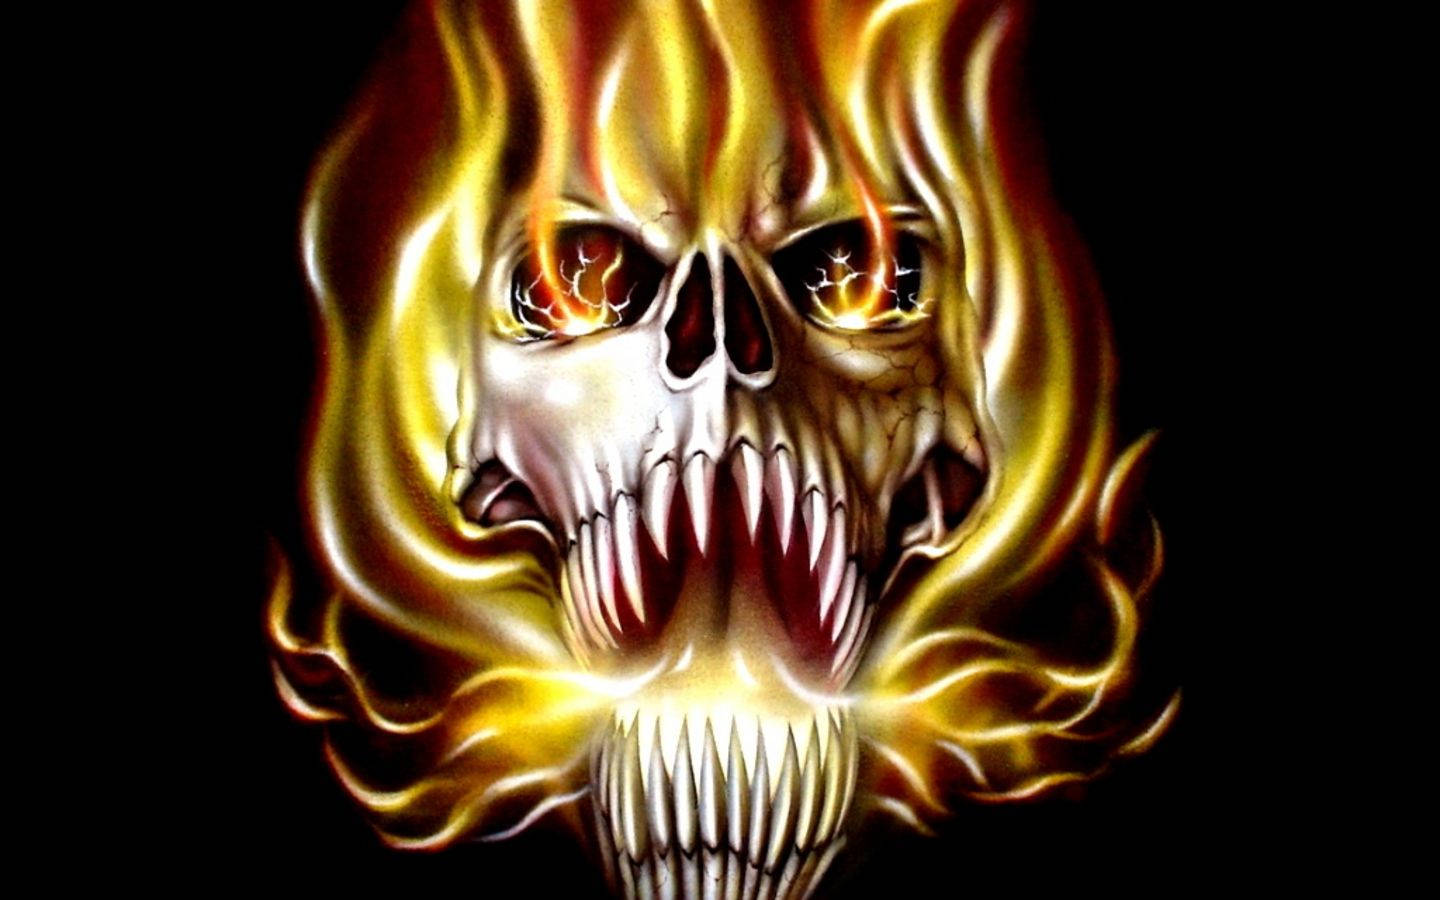 Flaming Skull Monster